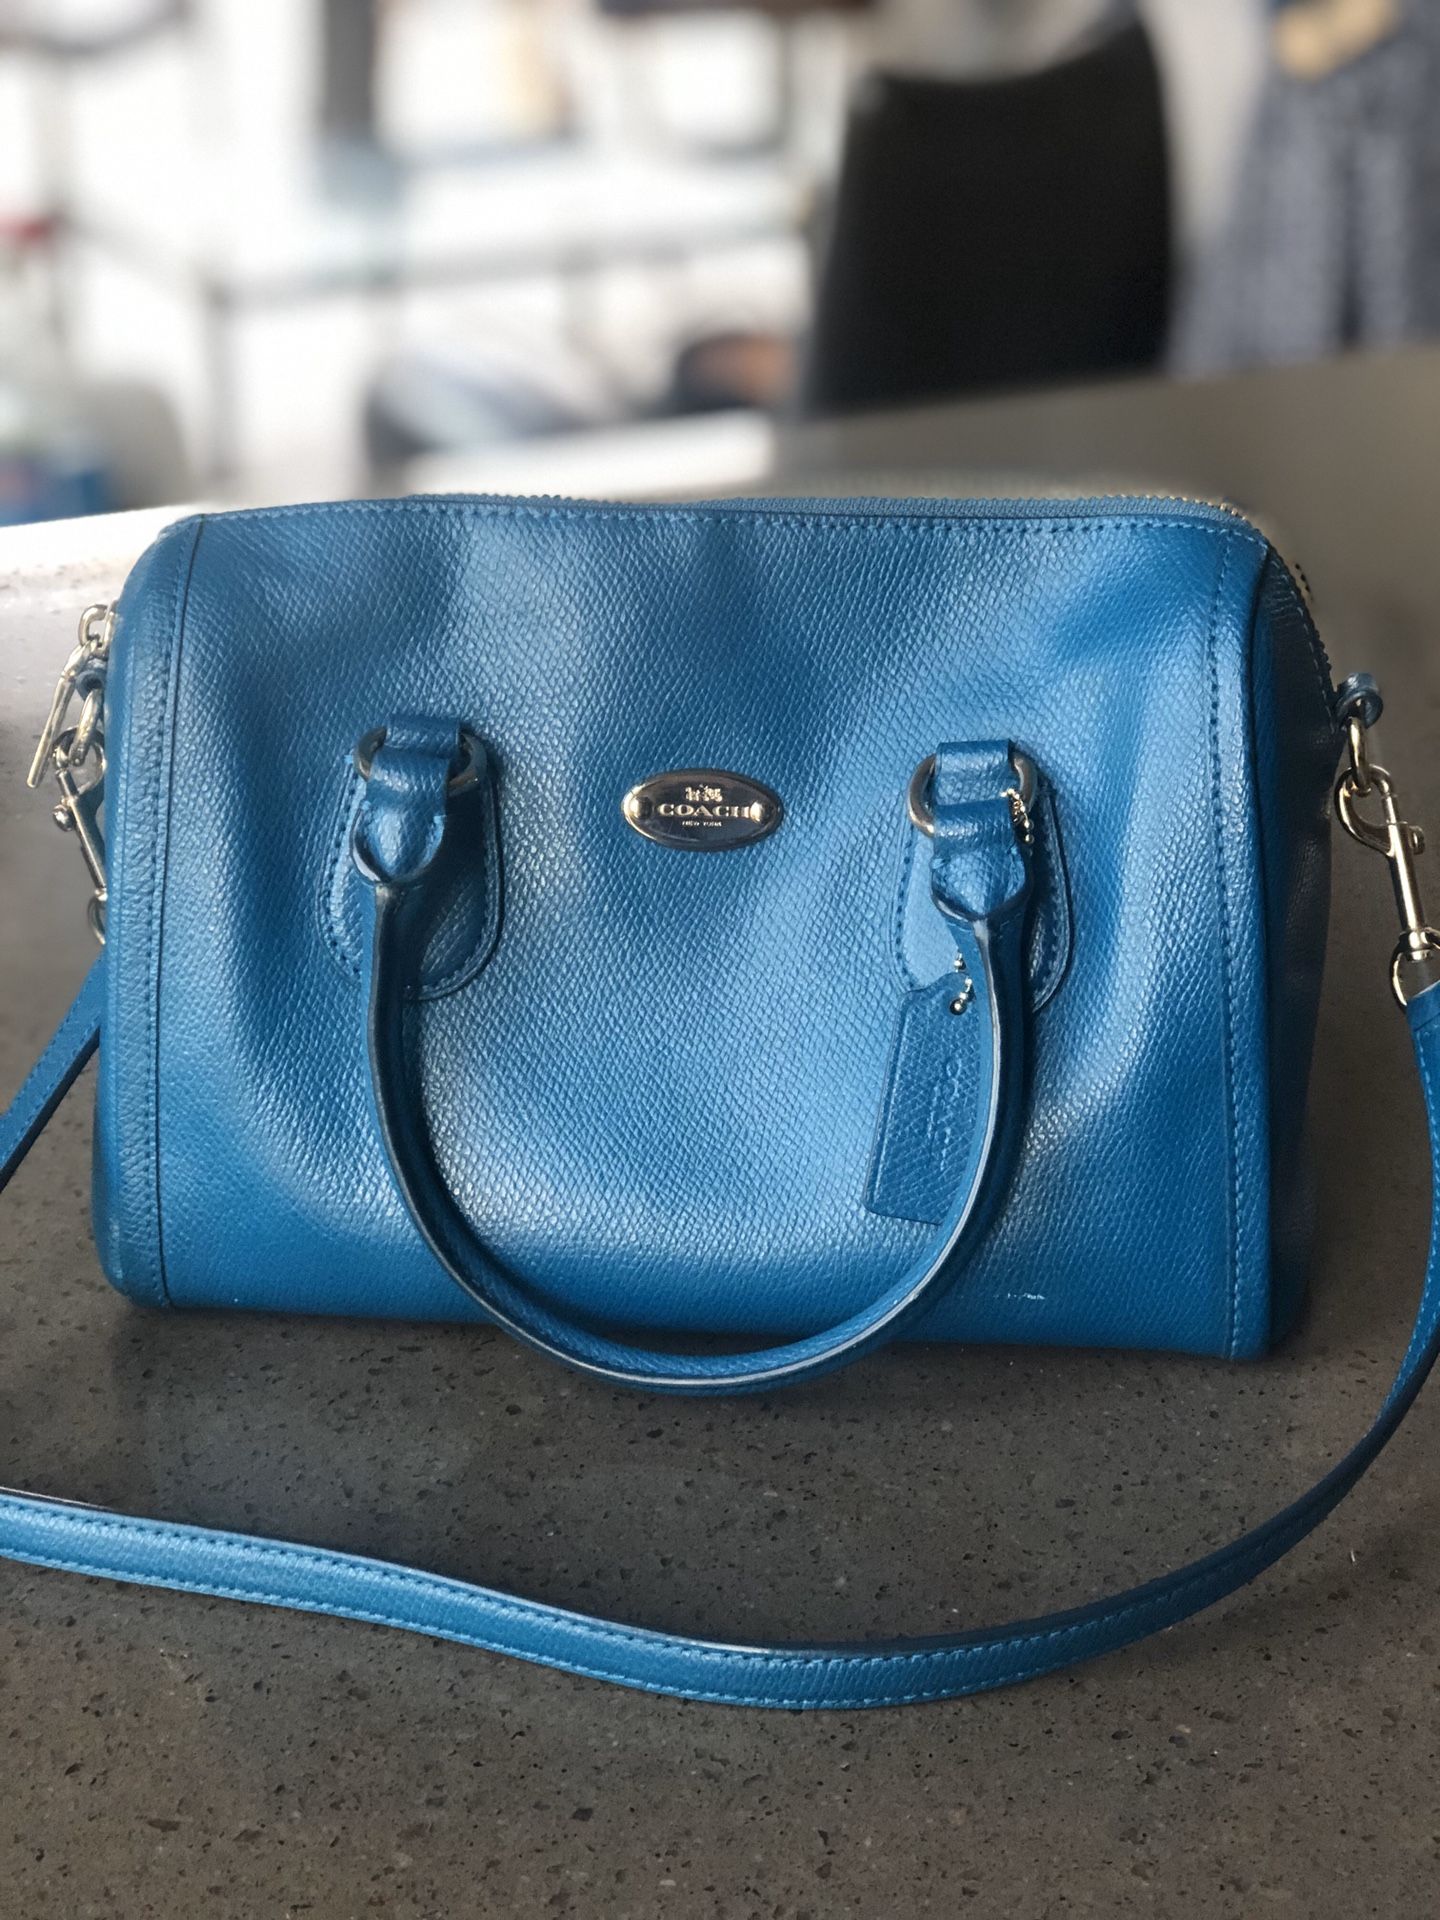 Denim-blue leather coach bag - authentic